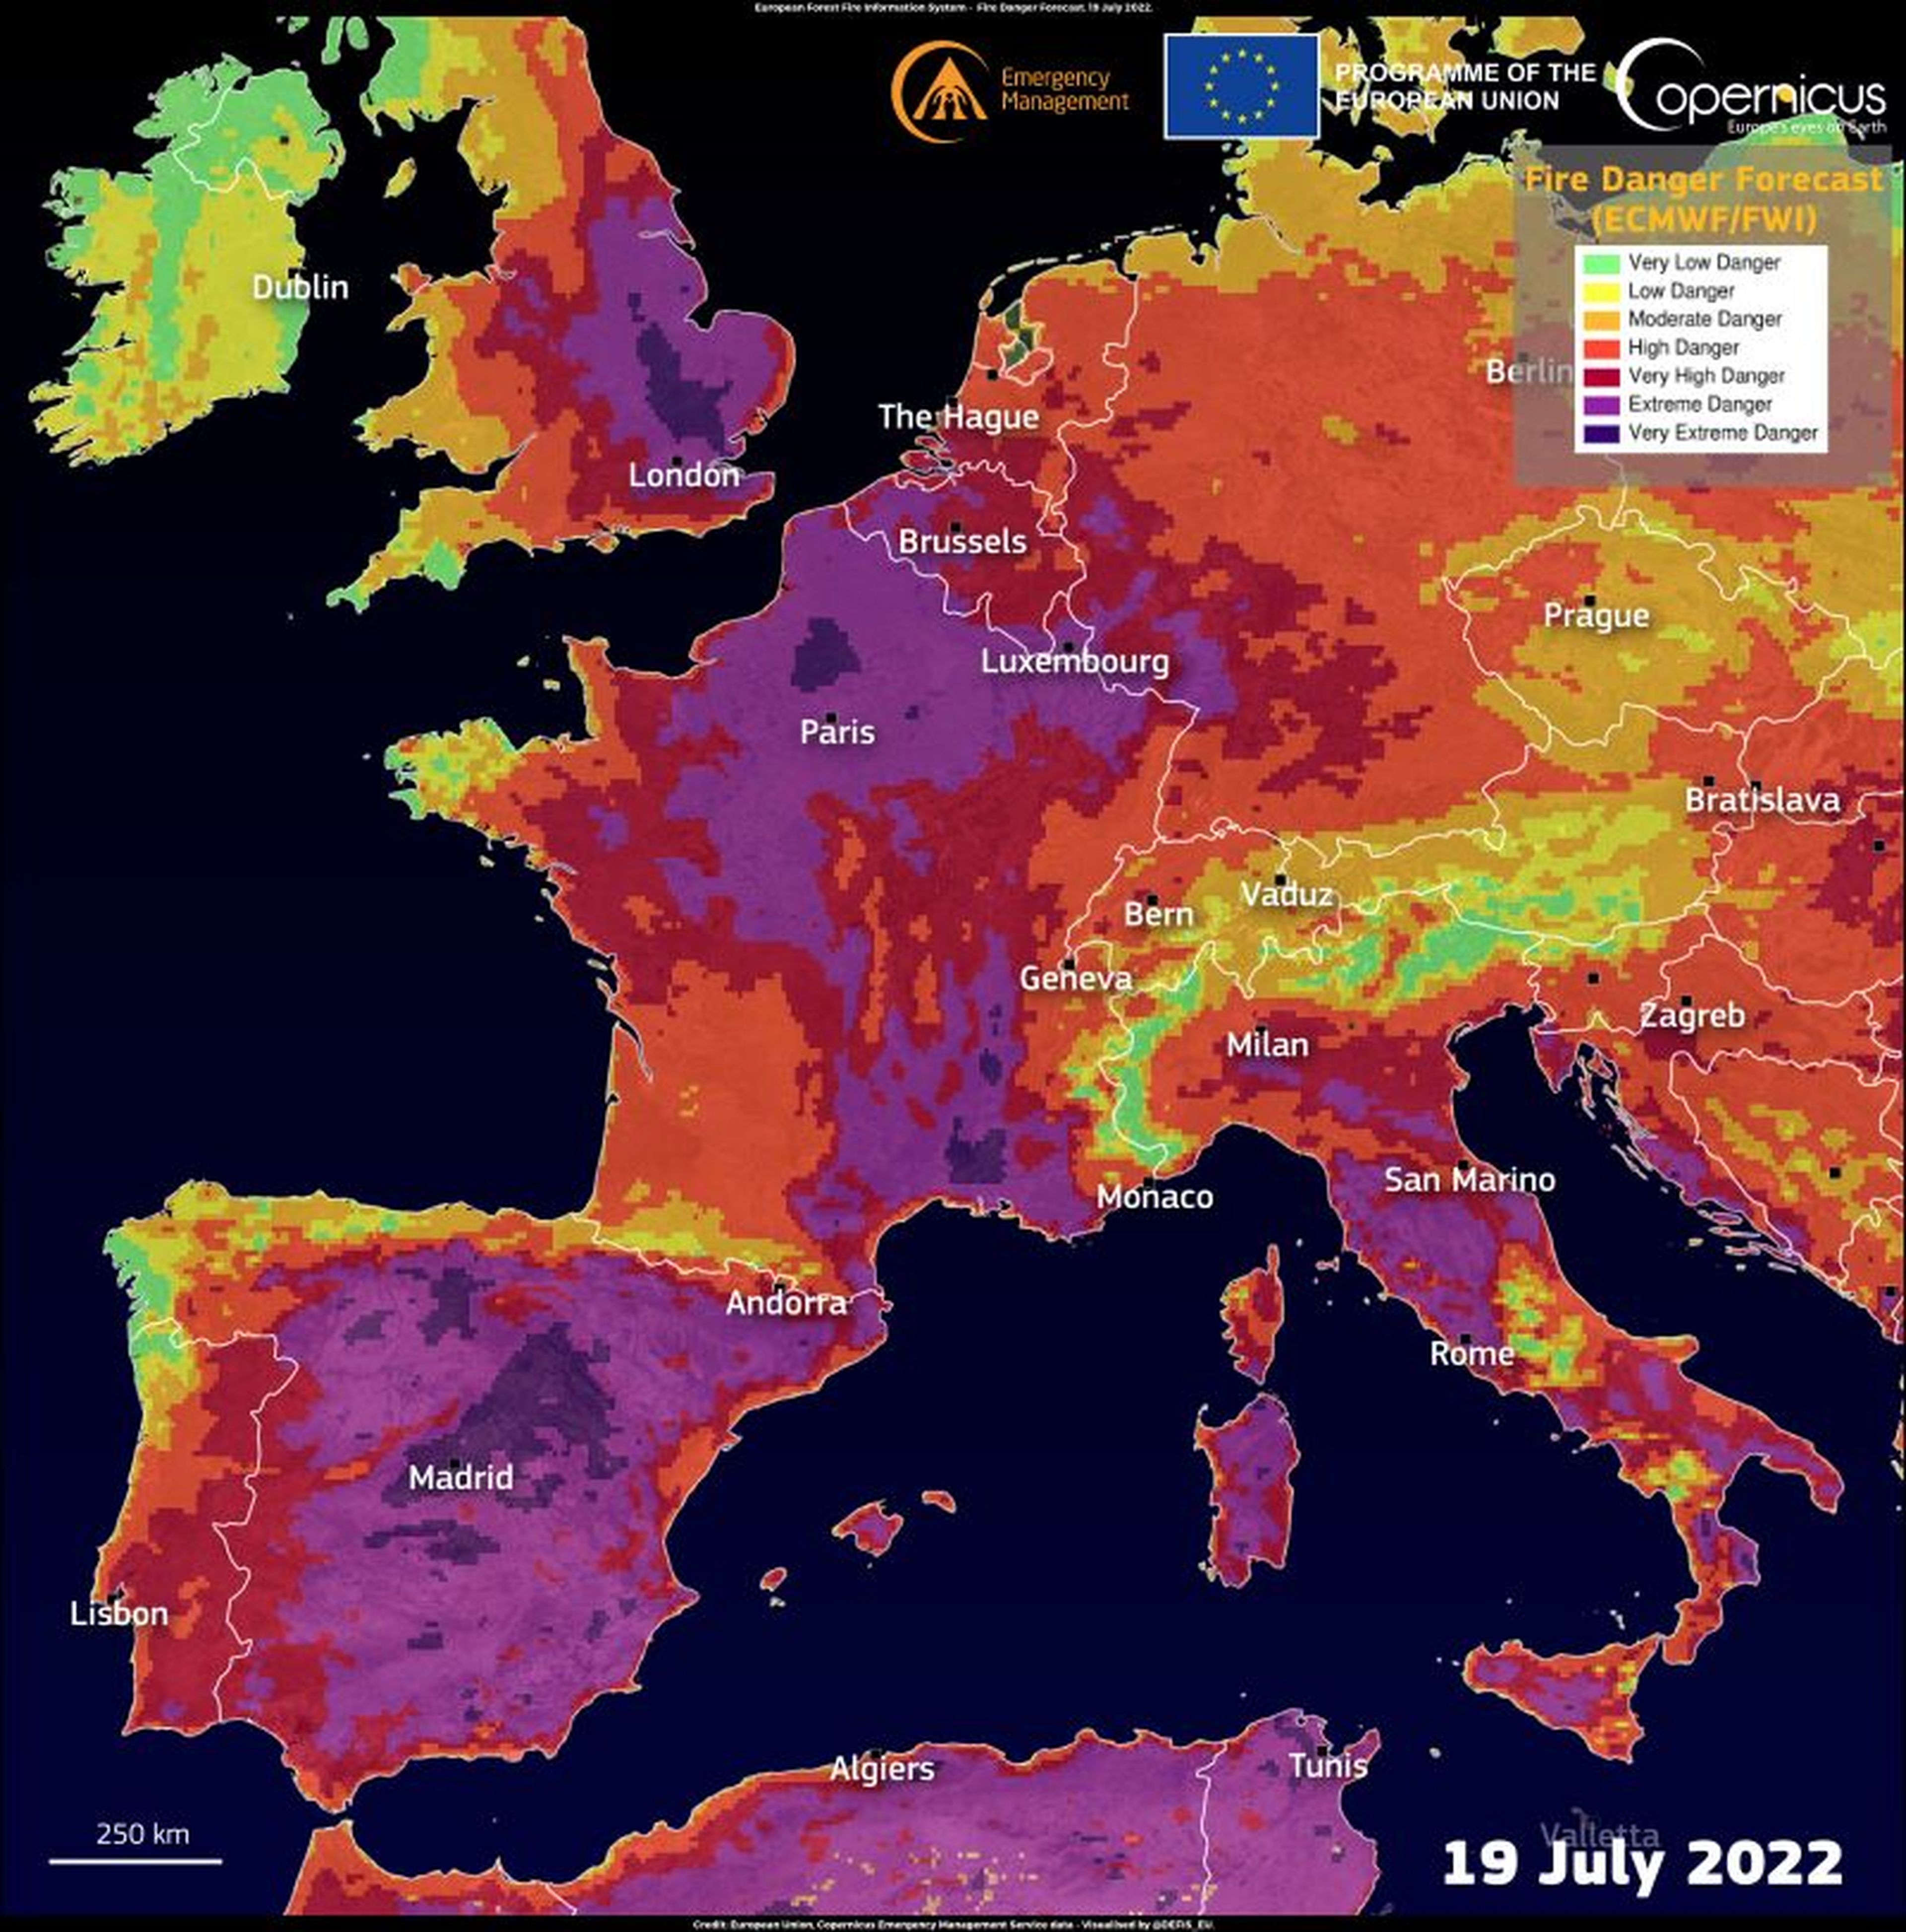 Elevadísimo riesgo de incendio en la Unión Europea el 19 de julio de 2022.